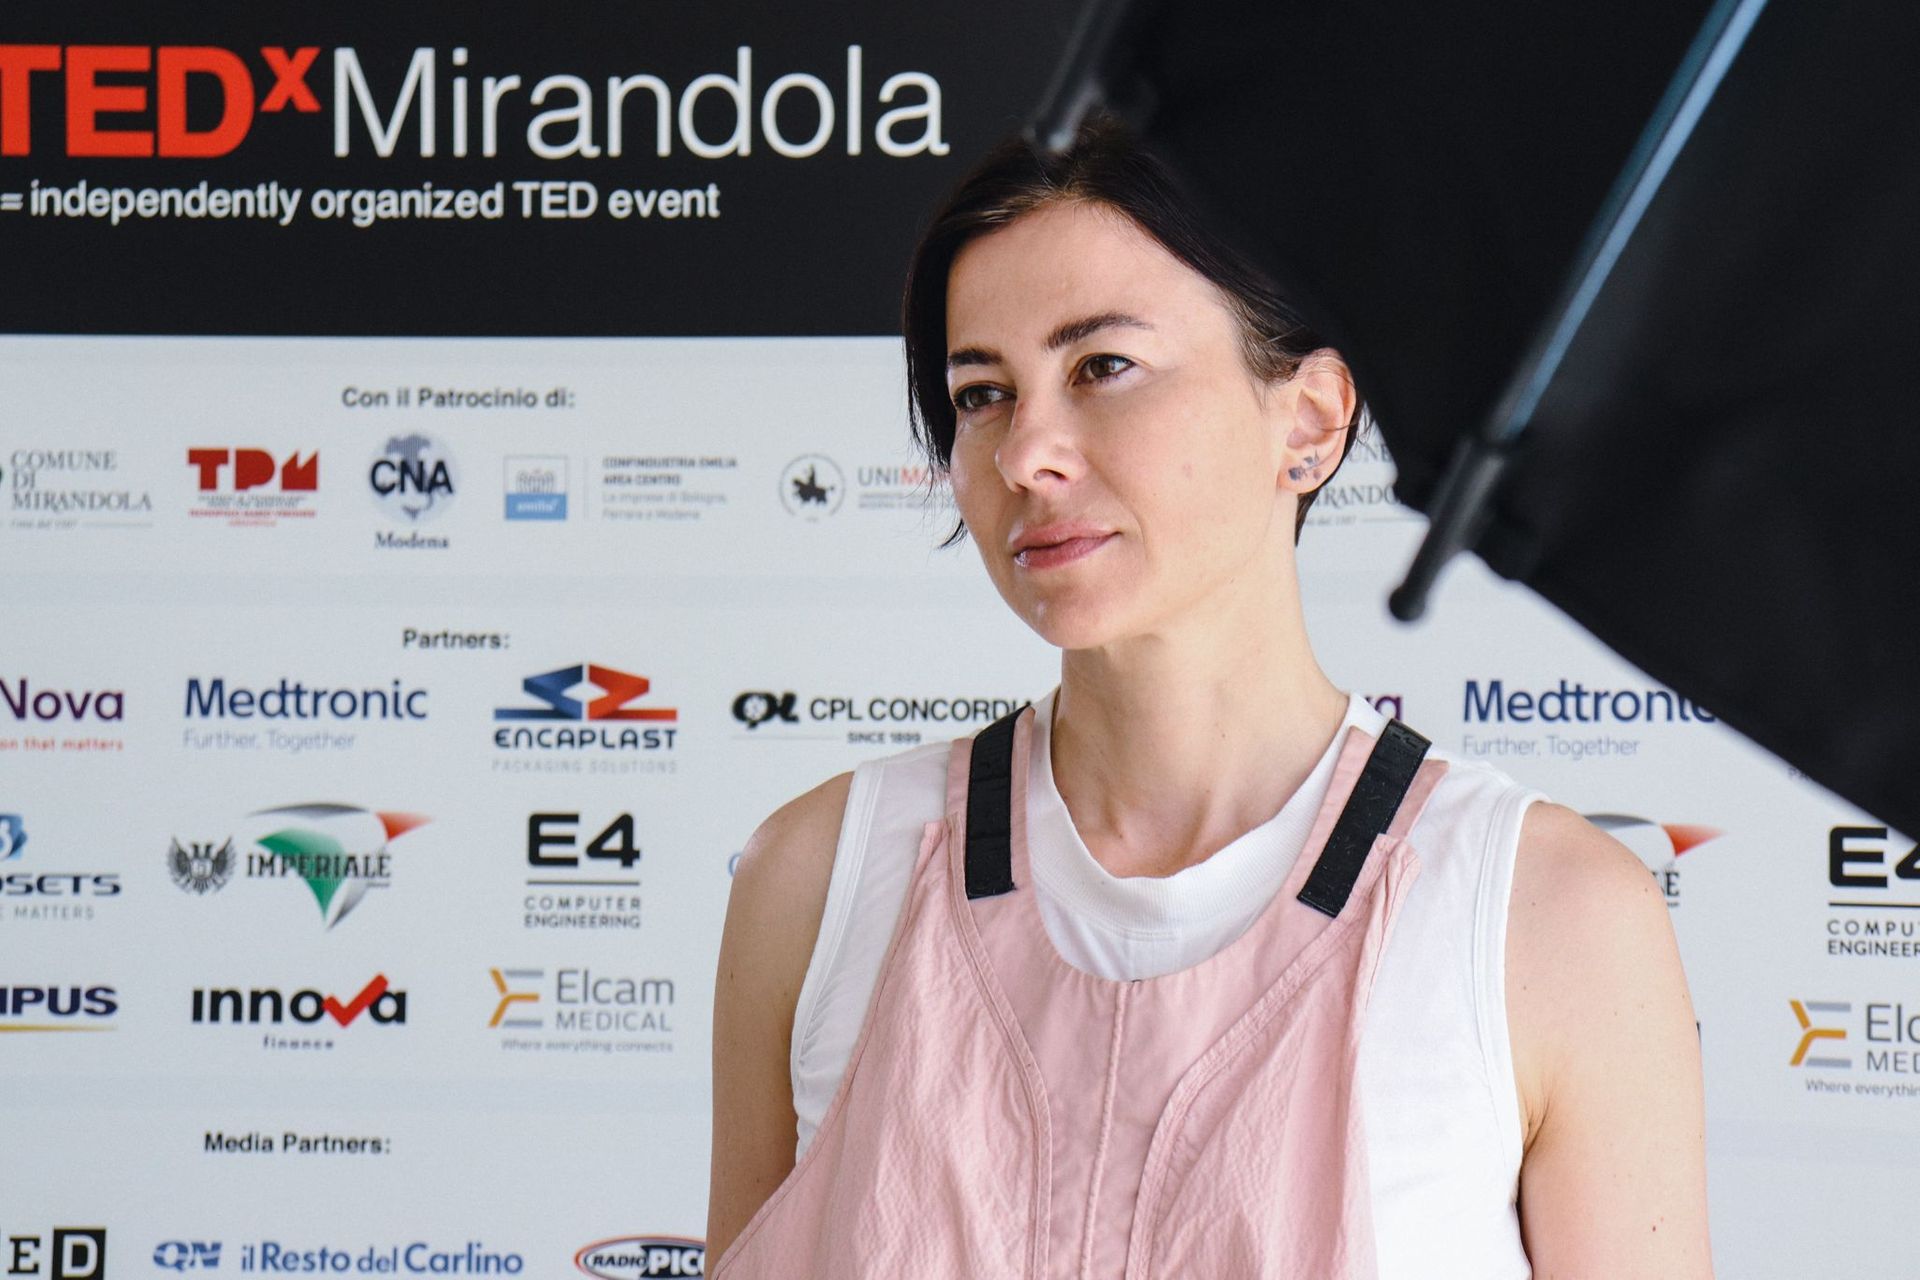 Maverx Vakfı'nın kurucusu Francesca Veronesi, 1962'de biyomedikal bölgesinin öncüsü olan Mario'nun kızı: TEDx Mirandola'nın ilk baskısında konuşmacıydı.